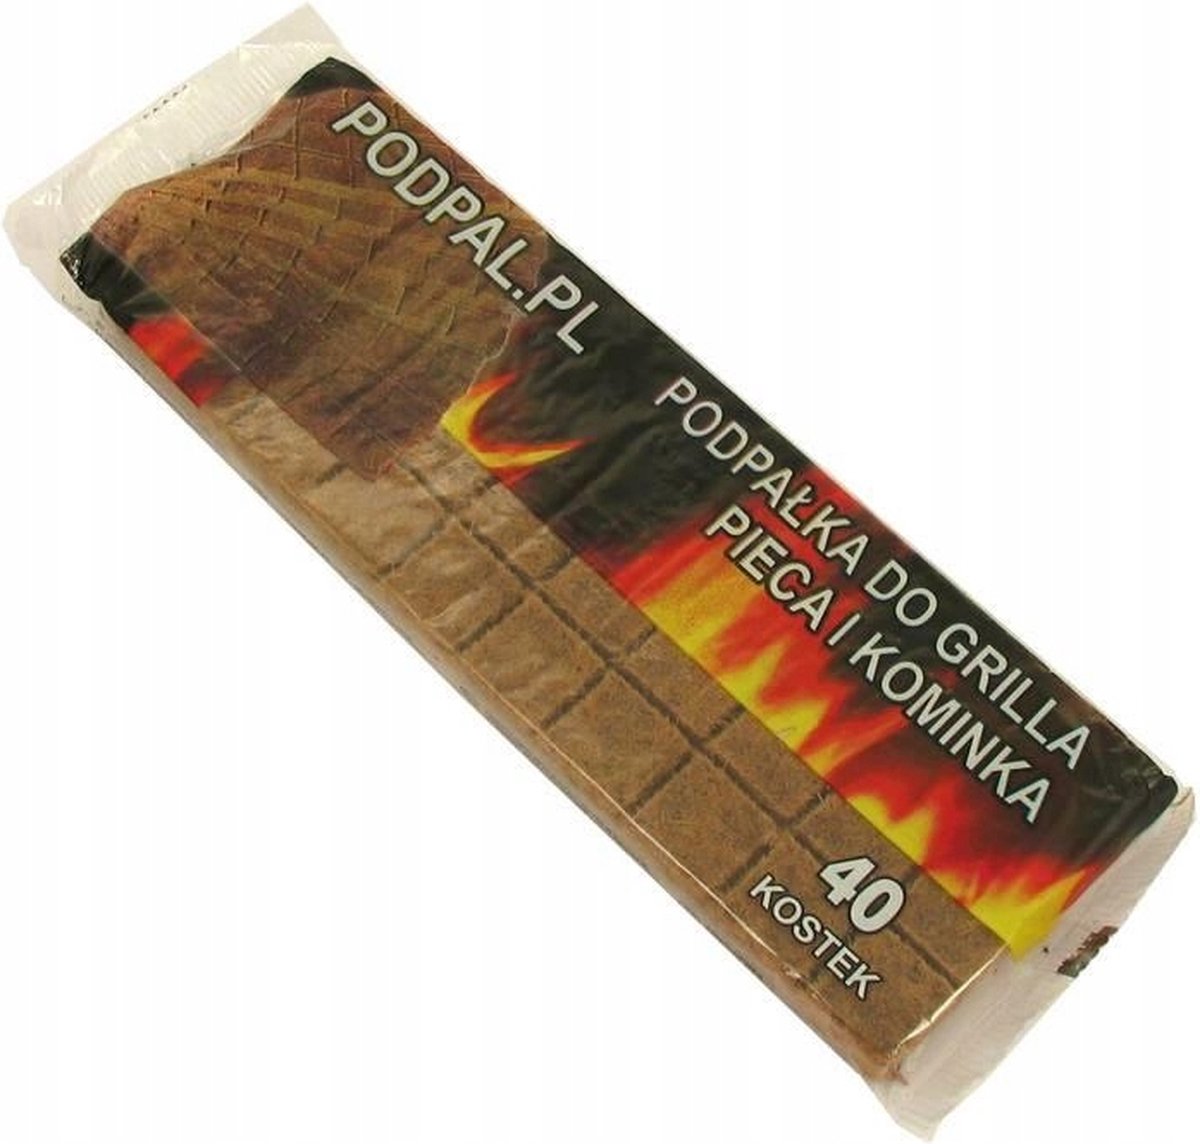 Aanmaakblokjes 1 pak van 40 stuks - Bruin - openhaard - kachel - voor houtkachel - firelighters to fire up